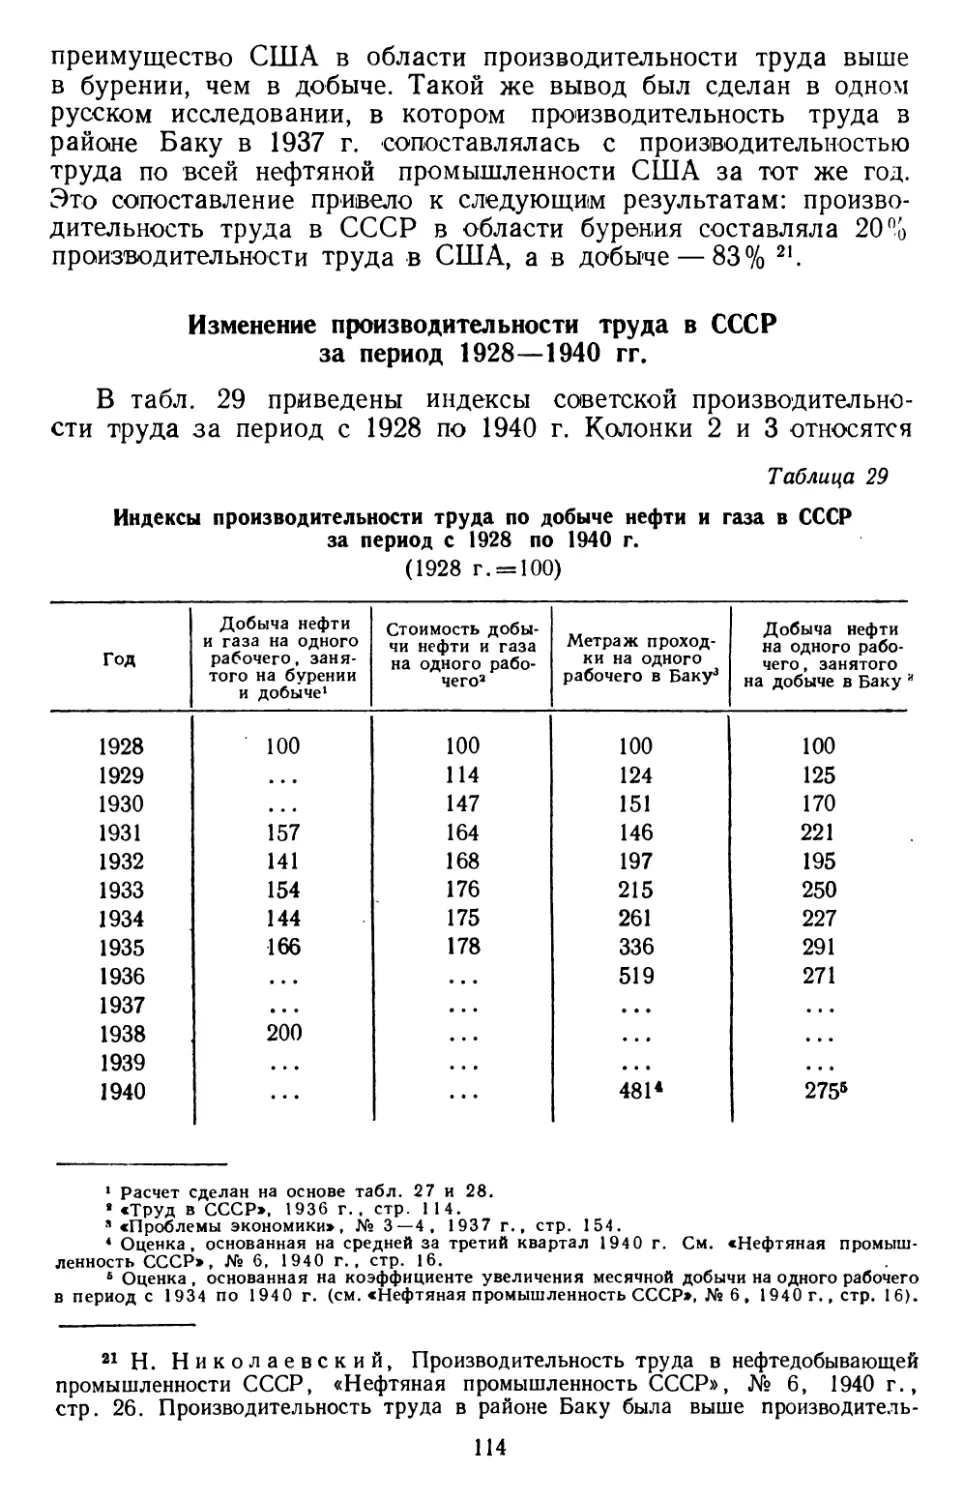 Изменение производительности труда в СССР за период 1928—1940 гг